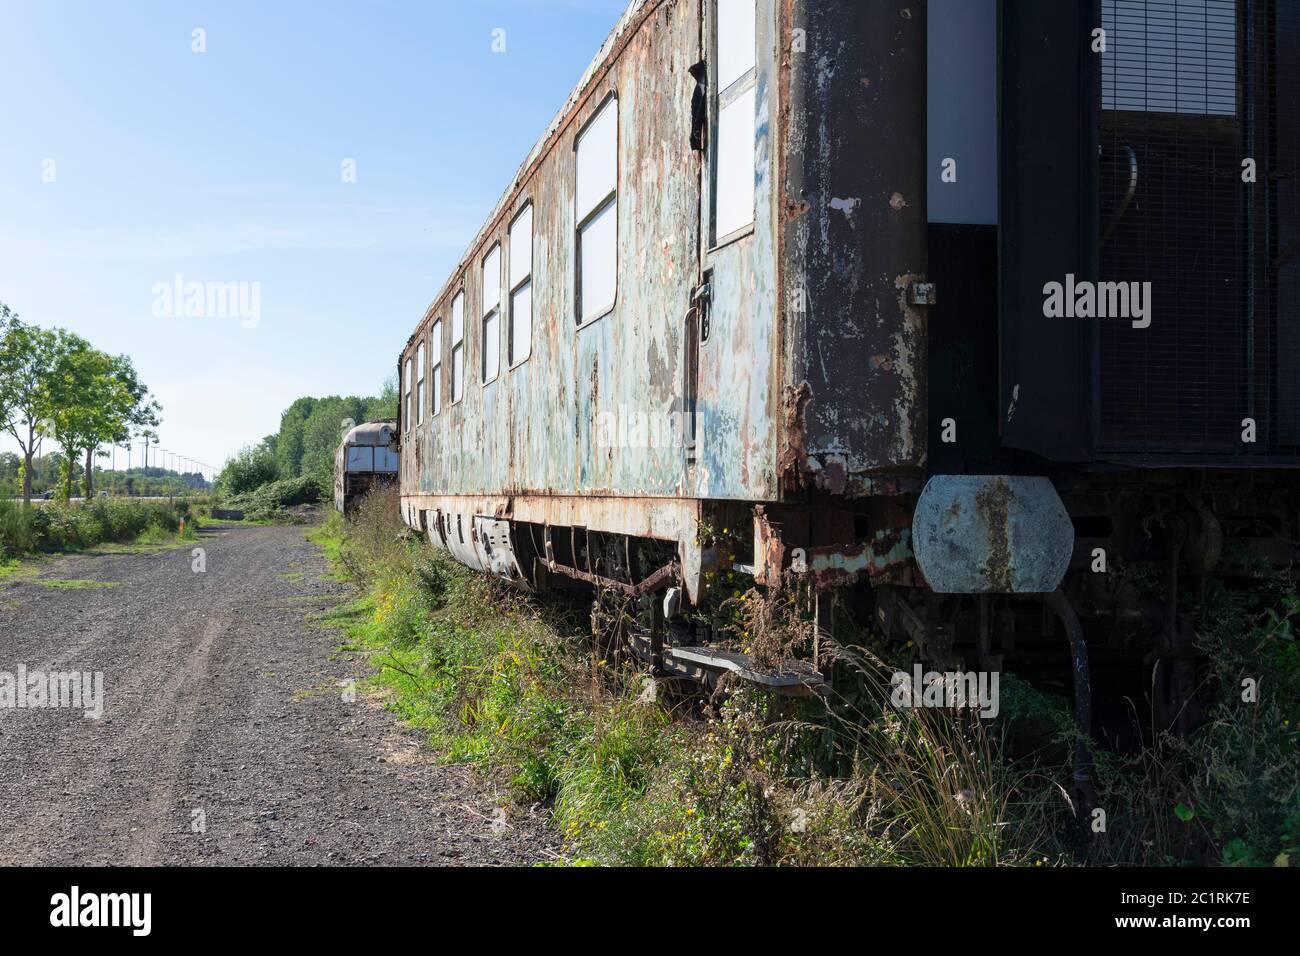 Alte verlassene und rostige Zugwagen, wo die Farbe schon abblättert  Stockfotografie - Alamy